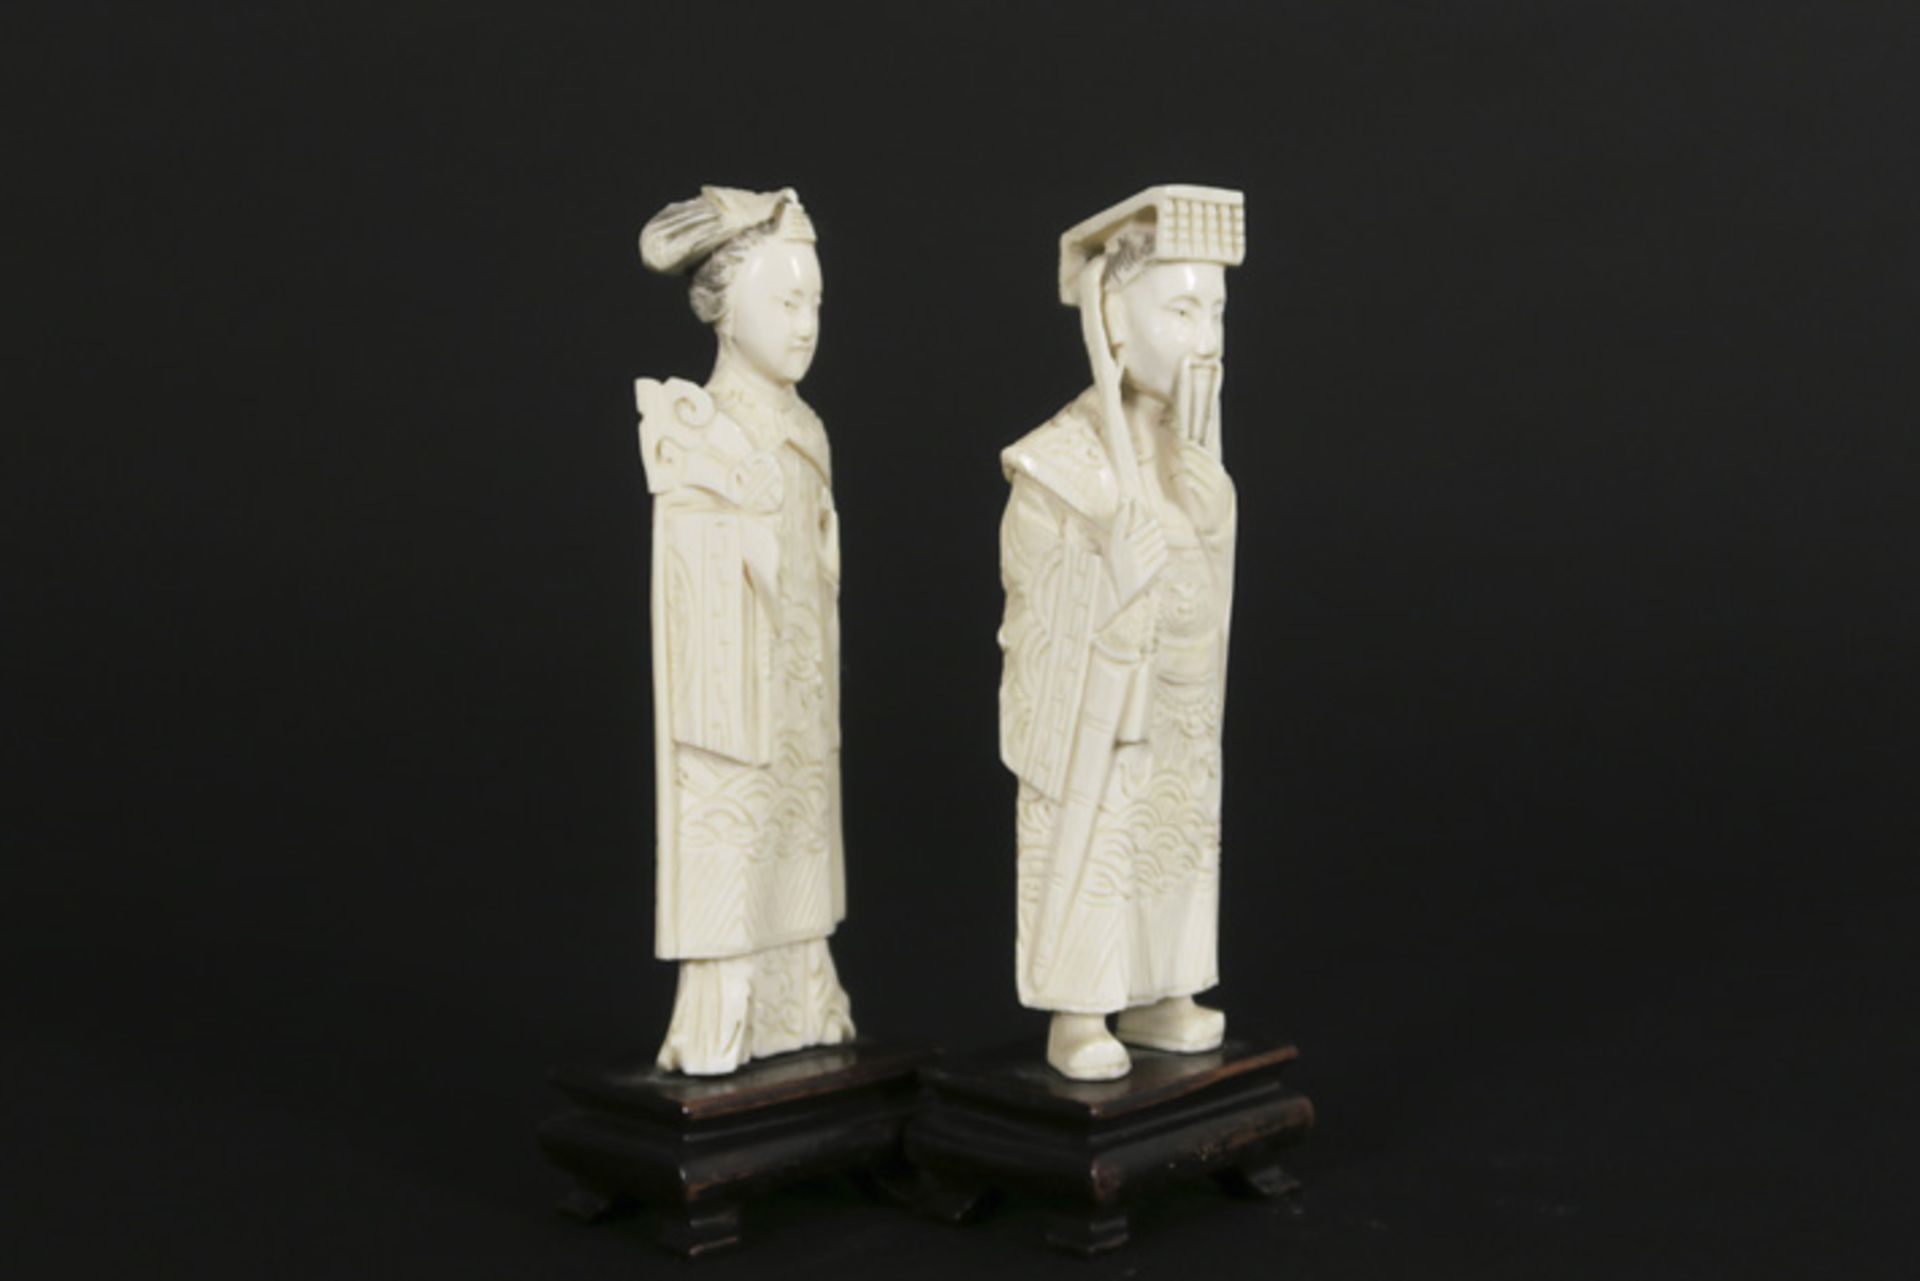 Paar kleine Chinese sculpturen in ivoor : "Keizer" en "Keizerin" - hoogtes : 12 en [...] - Bild 2 aus 4